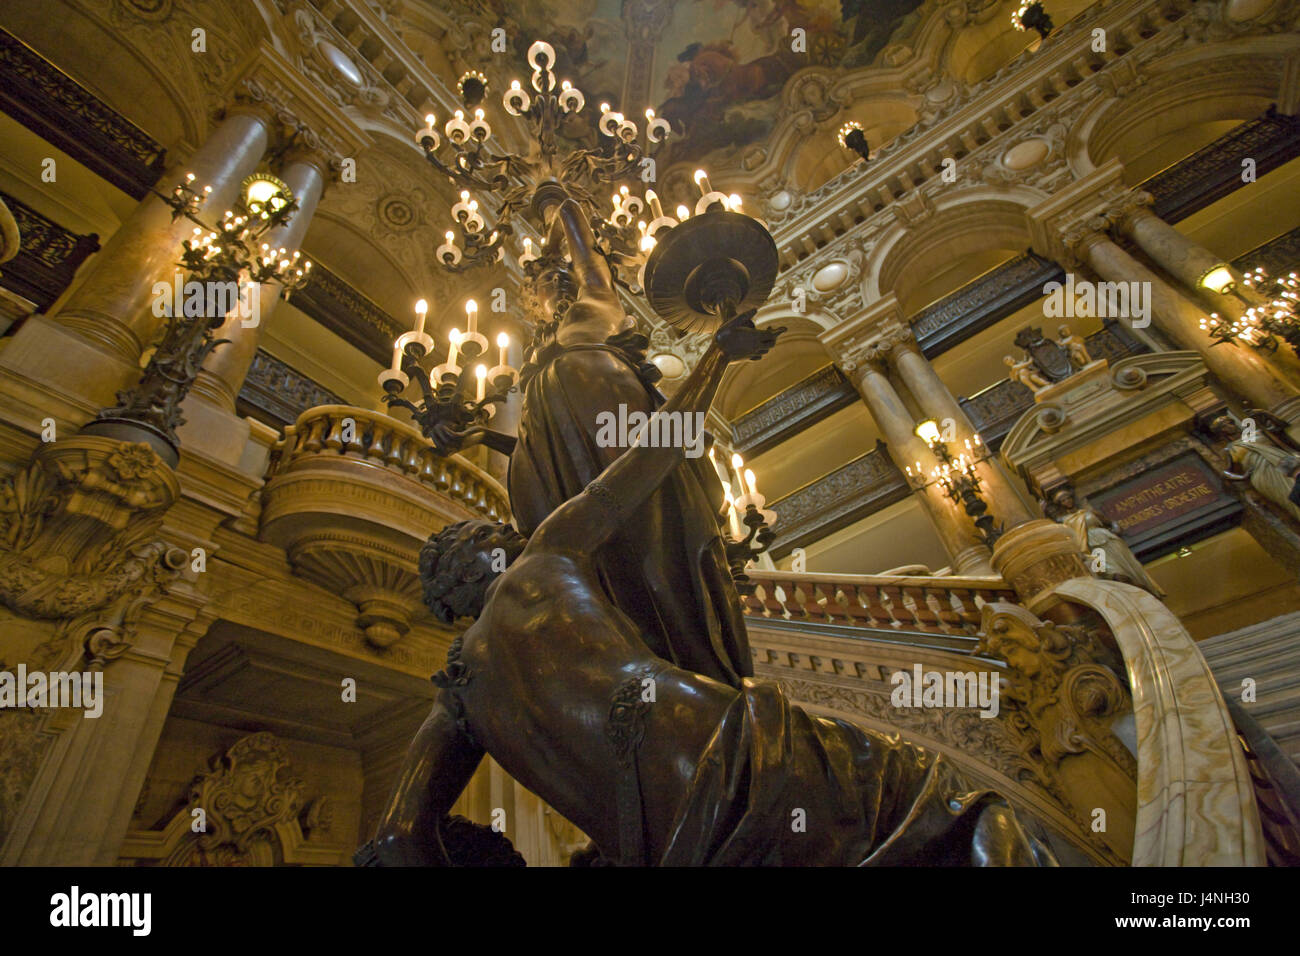 Francia, Parigi, opuses guarnitura, scale, statua, lampade, all'interno, Foto Stock